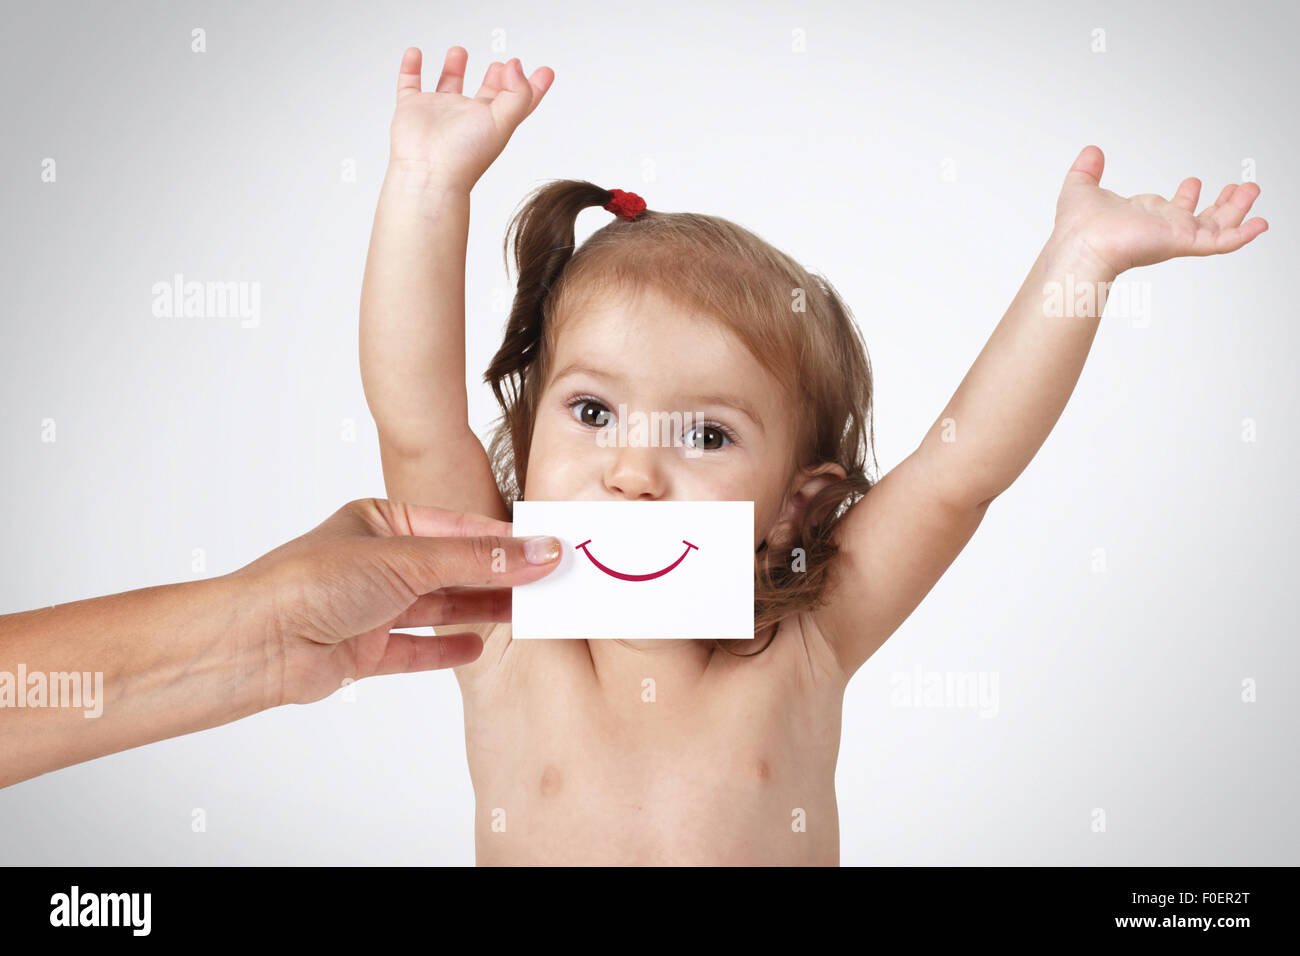 Felice gioiosa bambina nasconde il suo volto a mano con sorriso disegnato su carta su sfondo grigio Foto Stock